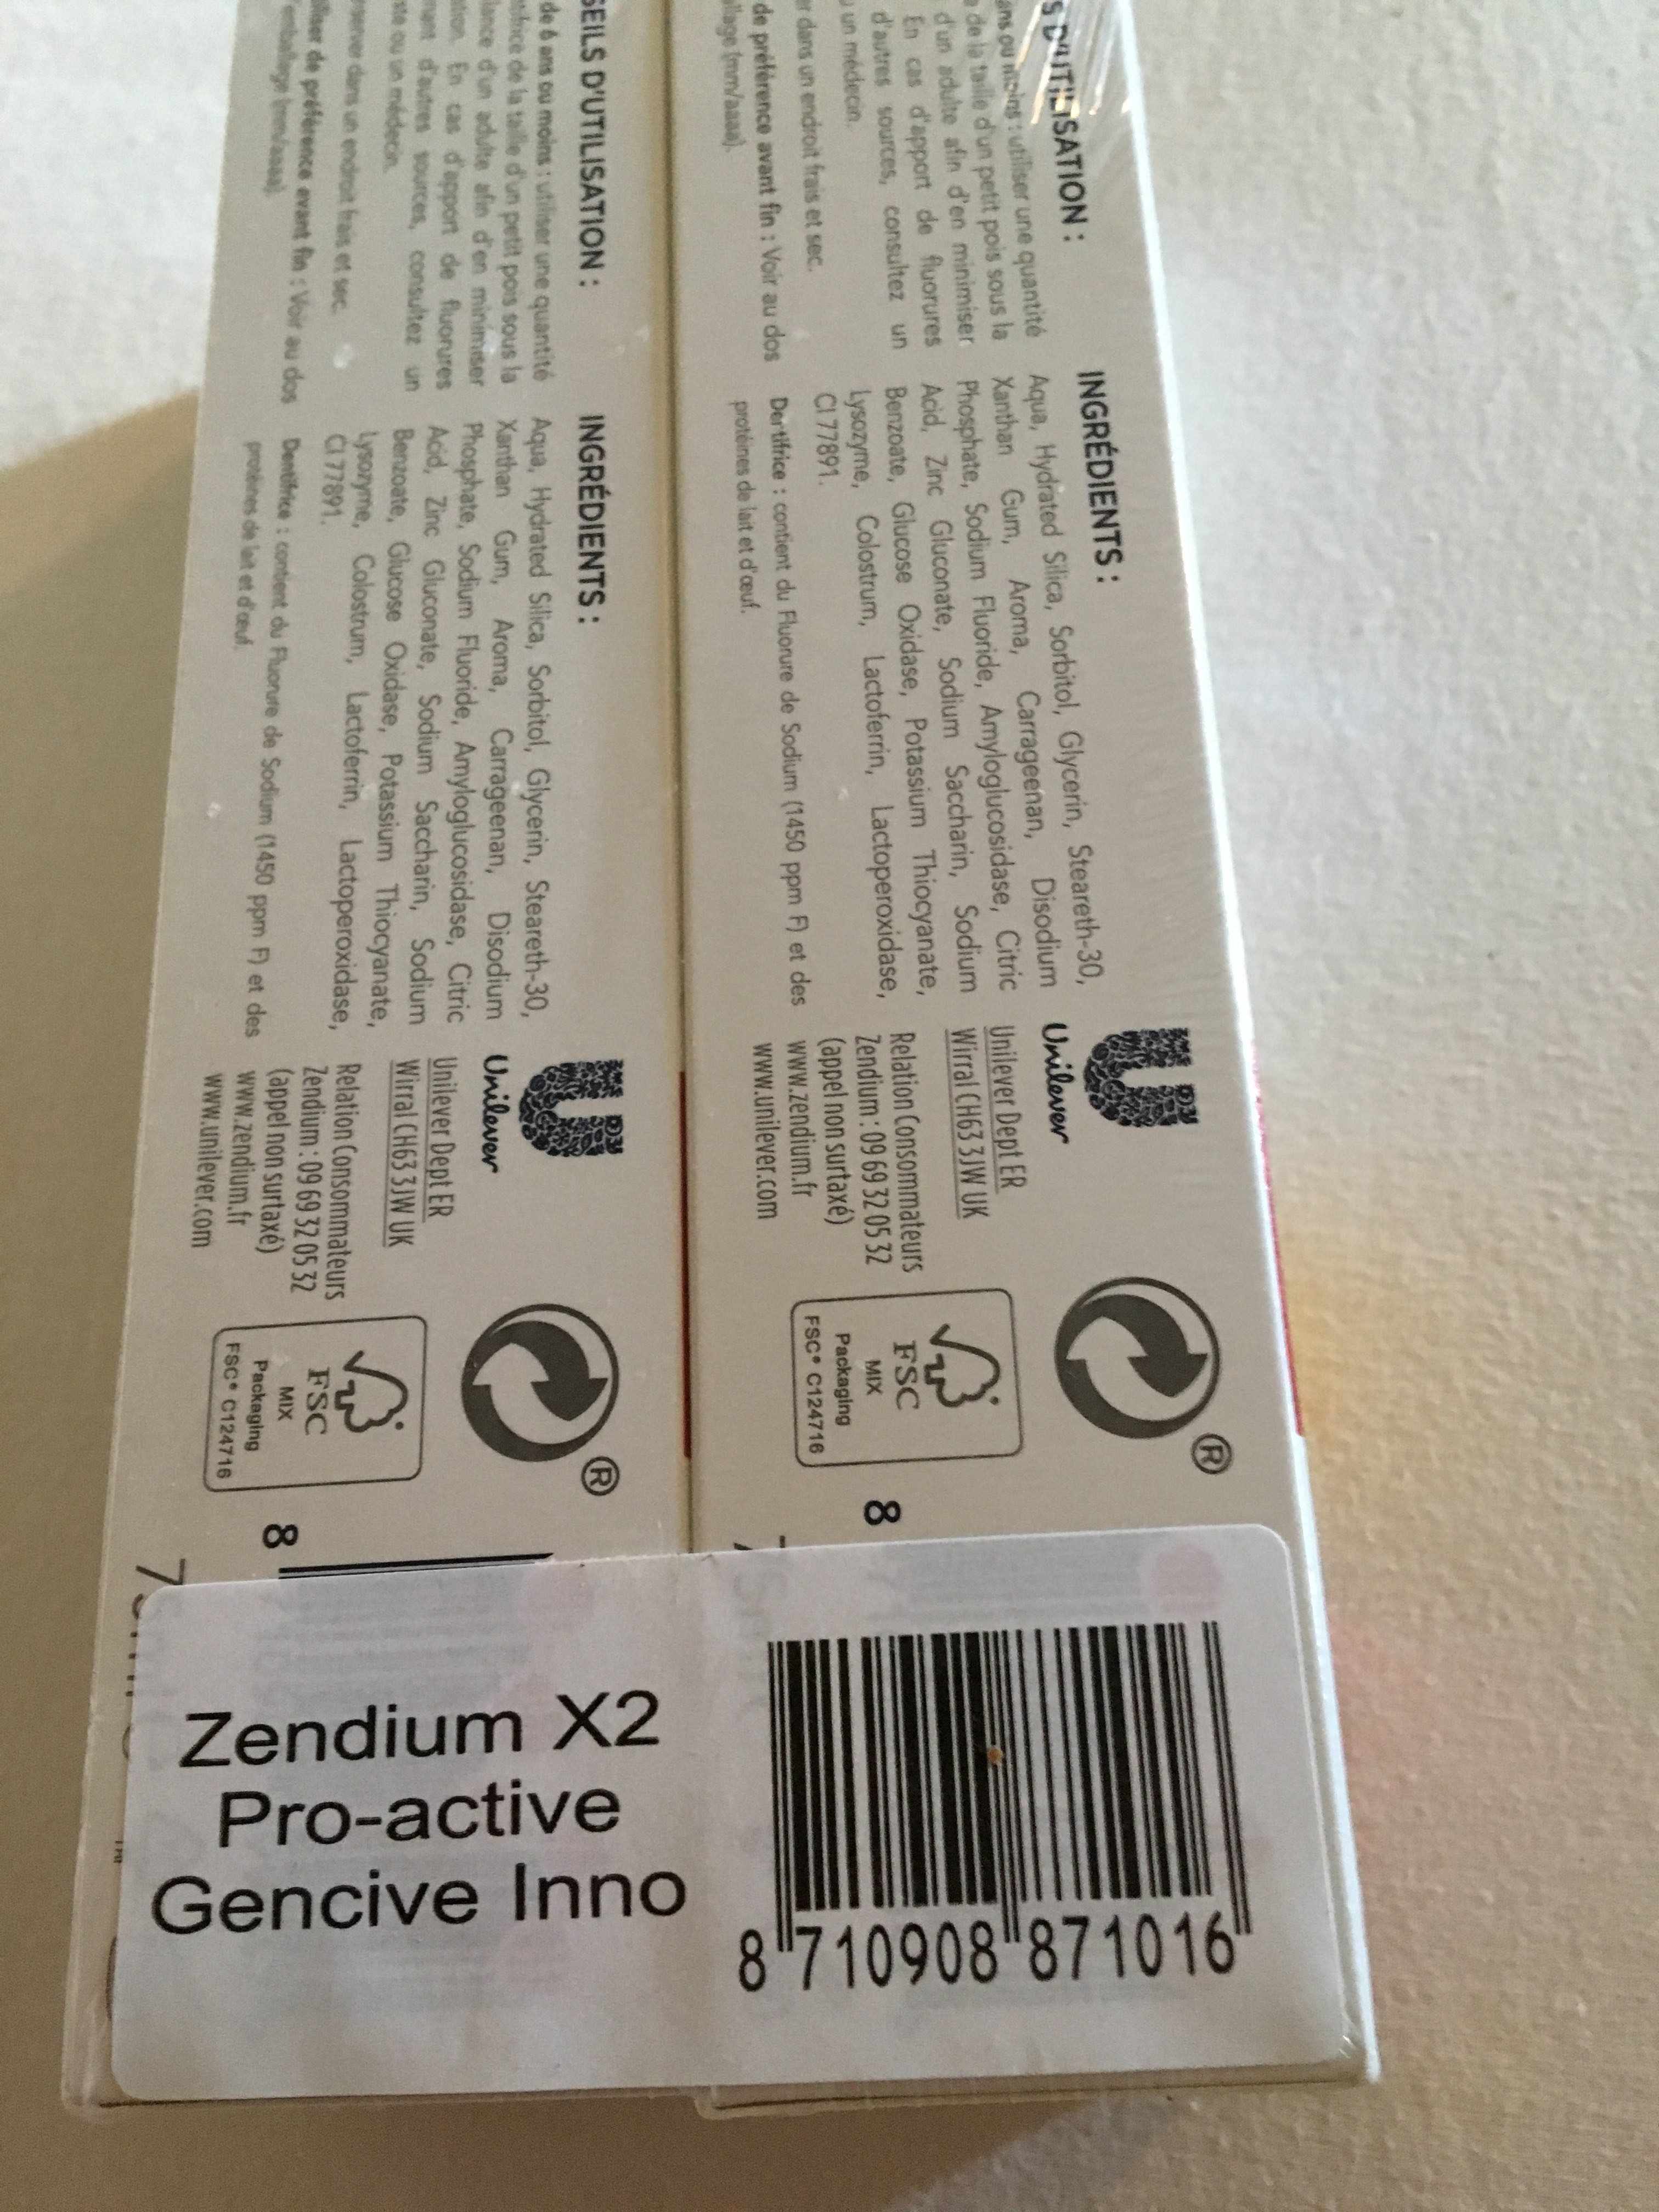 Zendium Dentifrice Proactive Gencives 75ml Lot de 2 - Product - fr